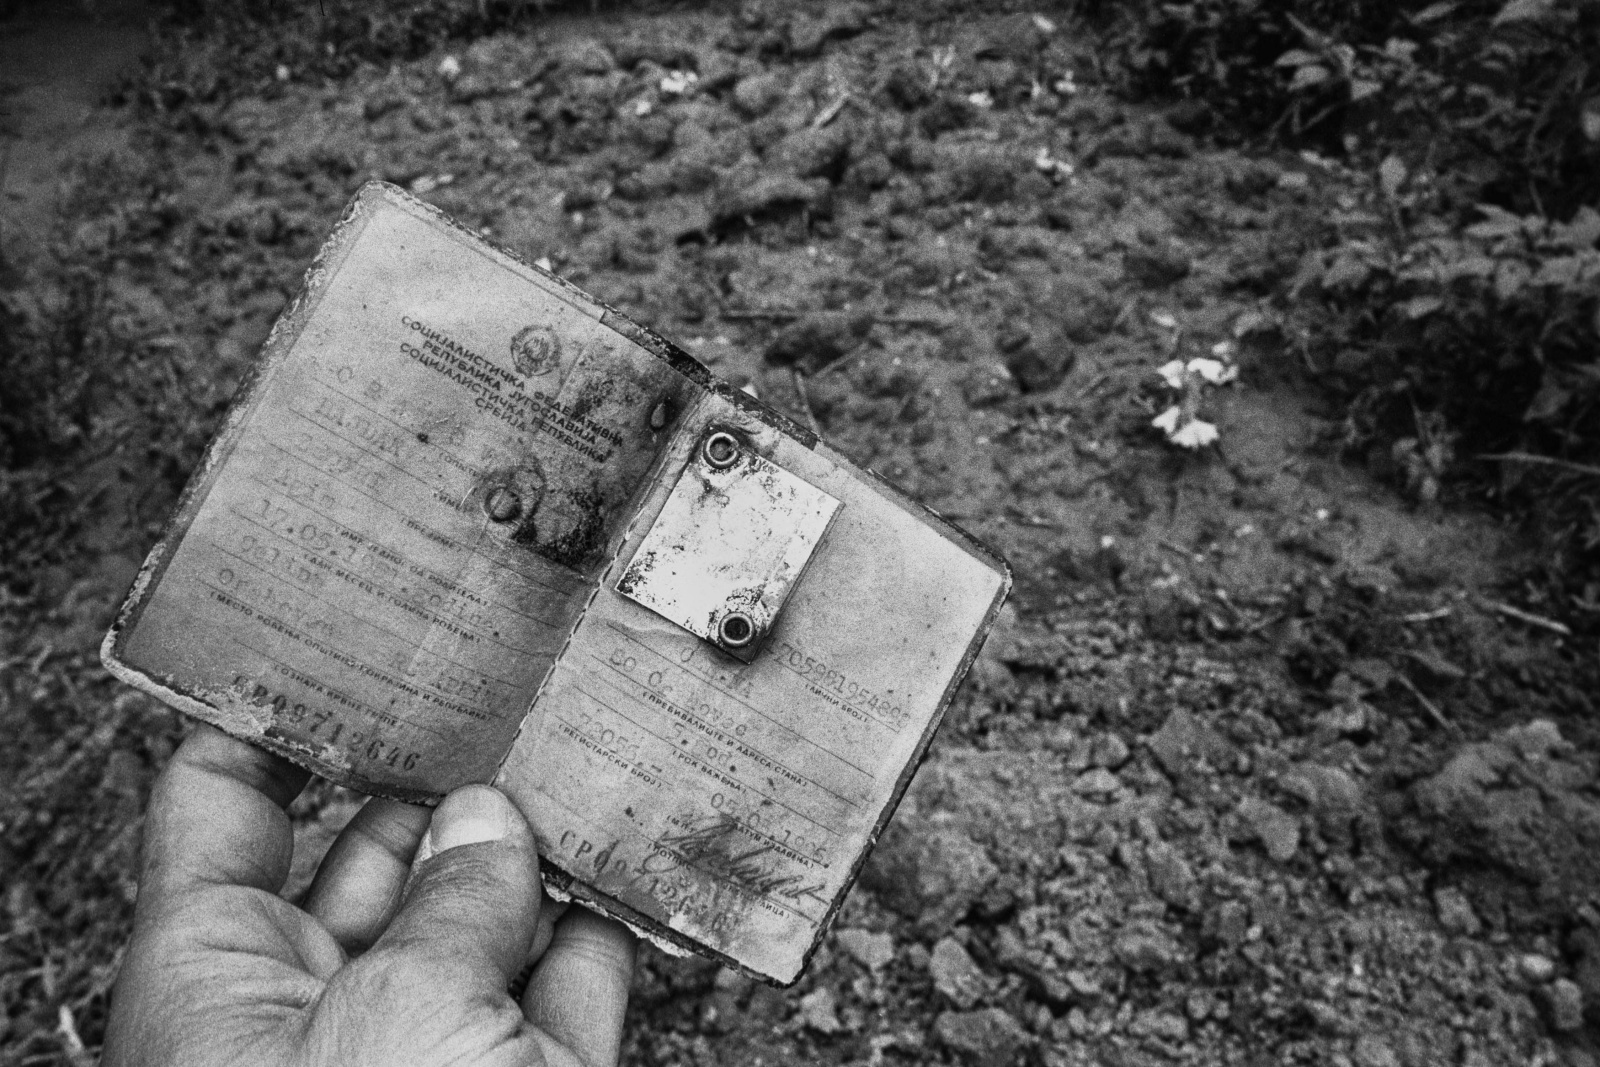 Kosovo 1999, ritrovamento dei documenti di ventitre persone trucidate e sepolte nella fossa comune di Celina. Il documento di AgimZeqir ucciso a undici anni